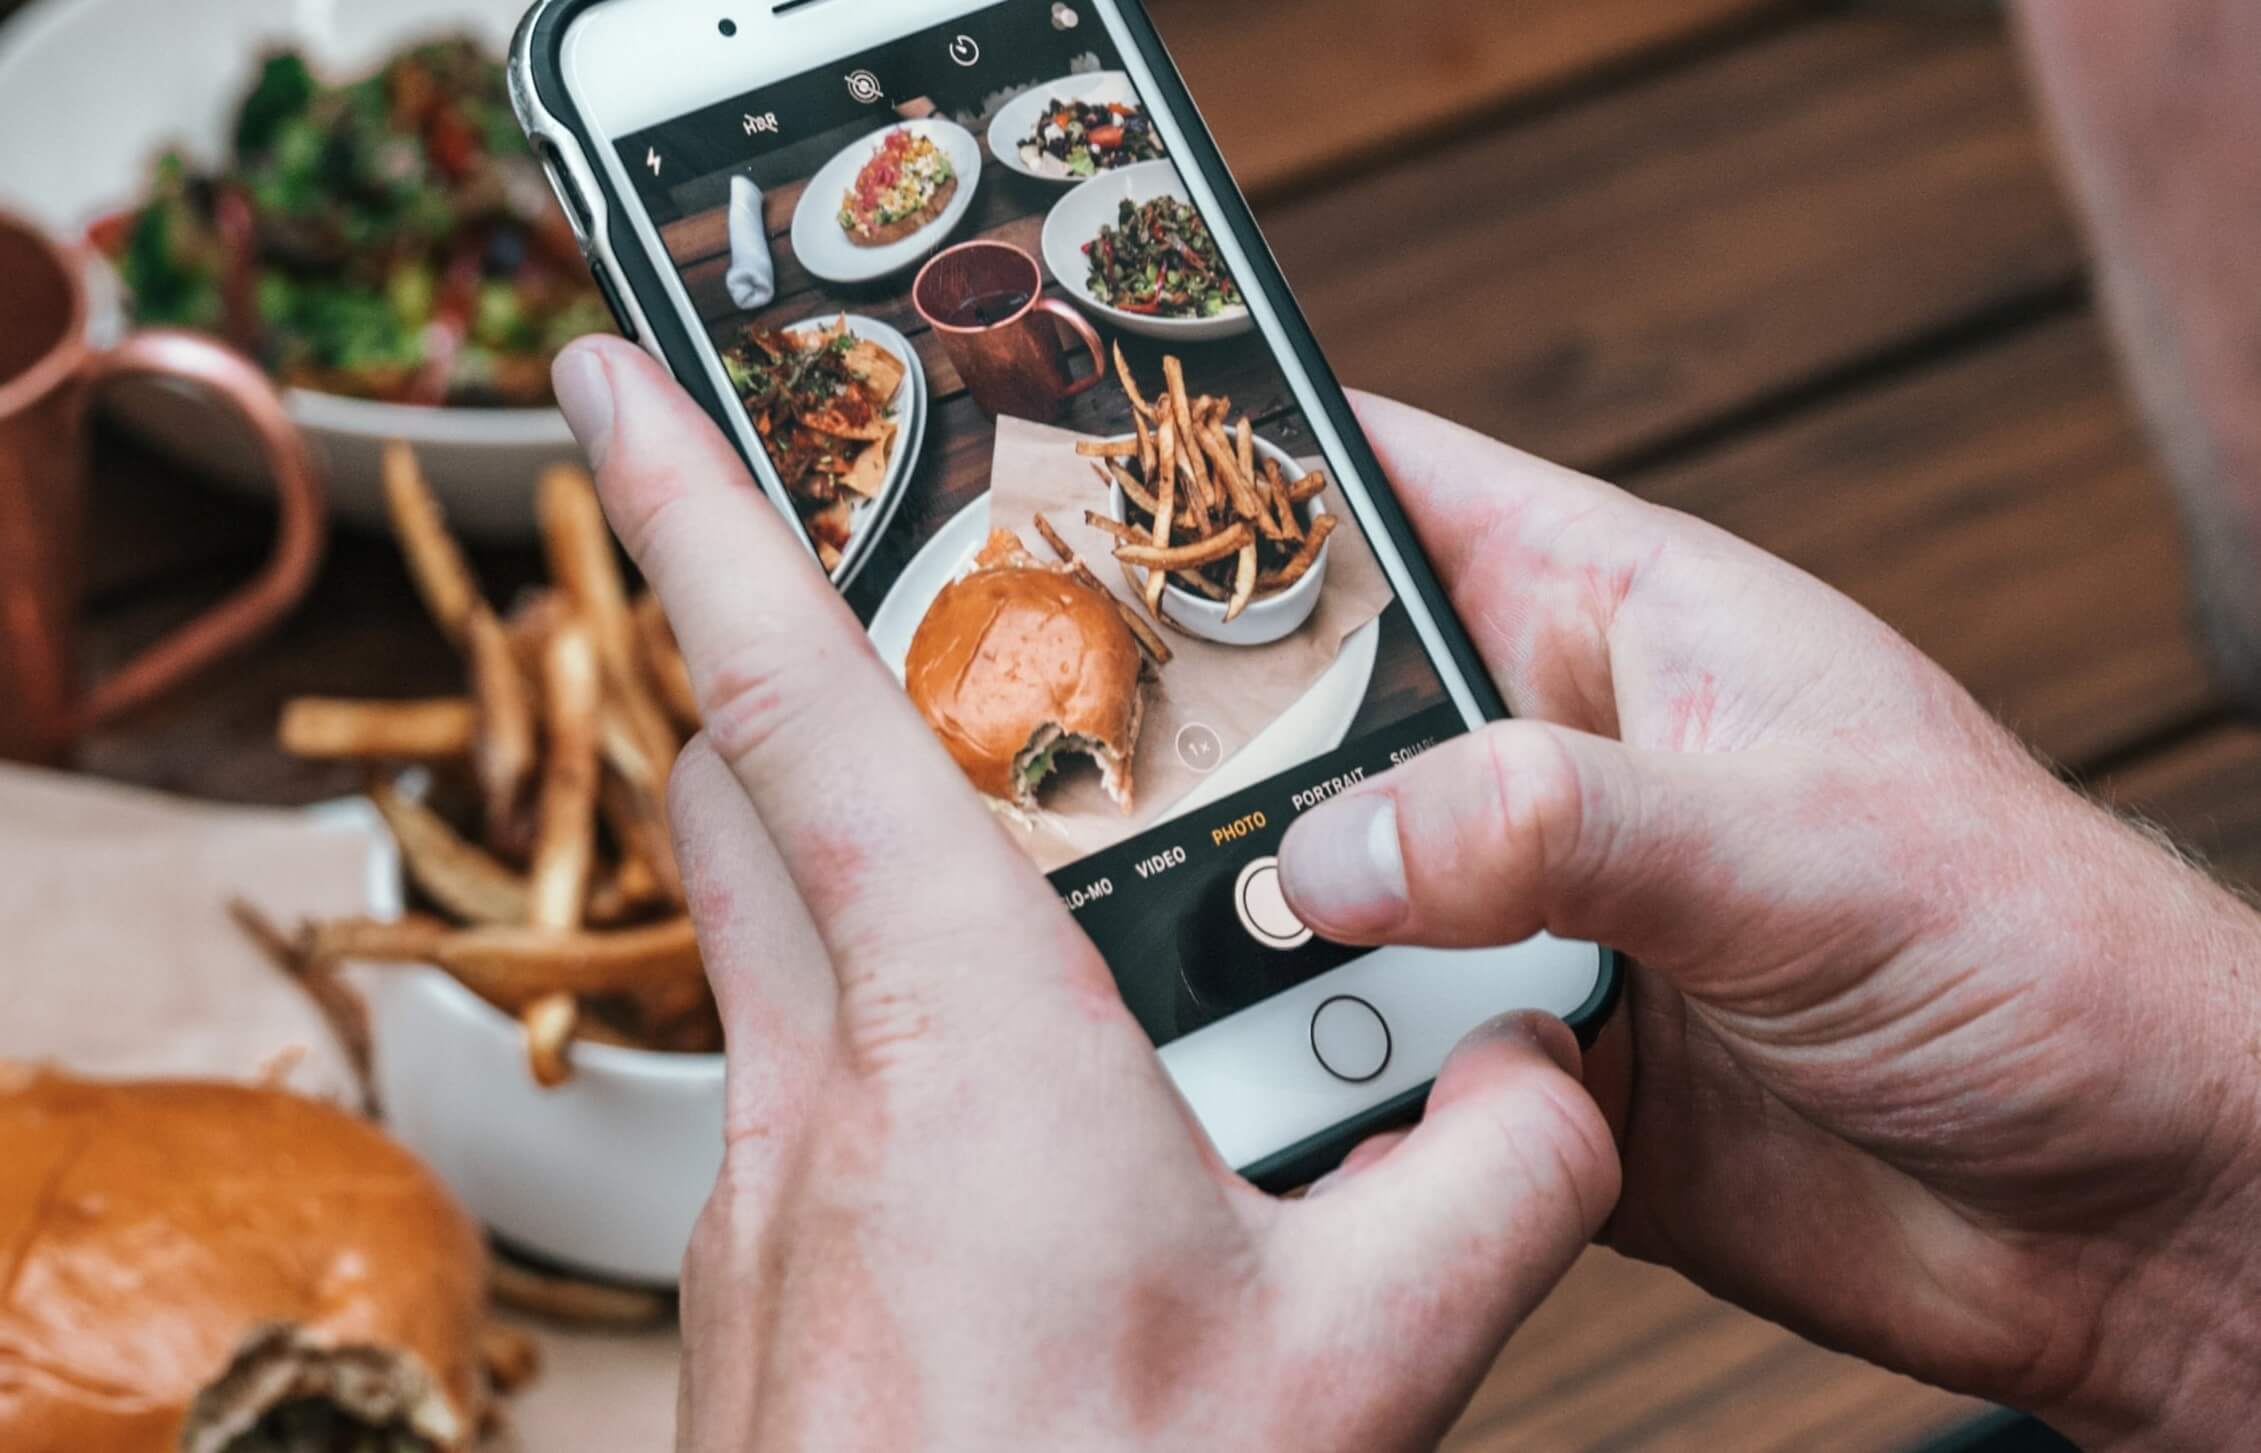 كيف يتأثر نظام تناولنا للطعام بما نراه على منصات التواصل الاجتماعي؟